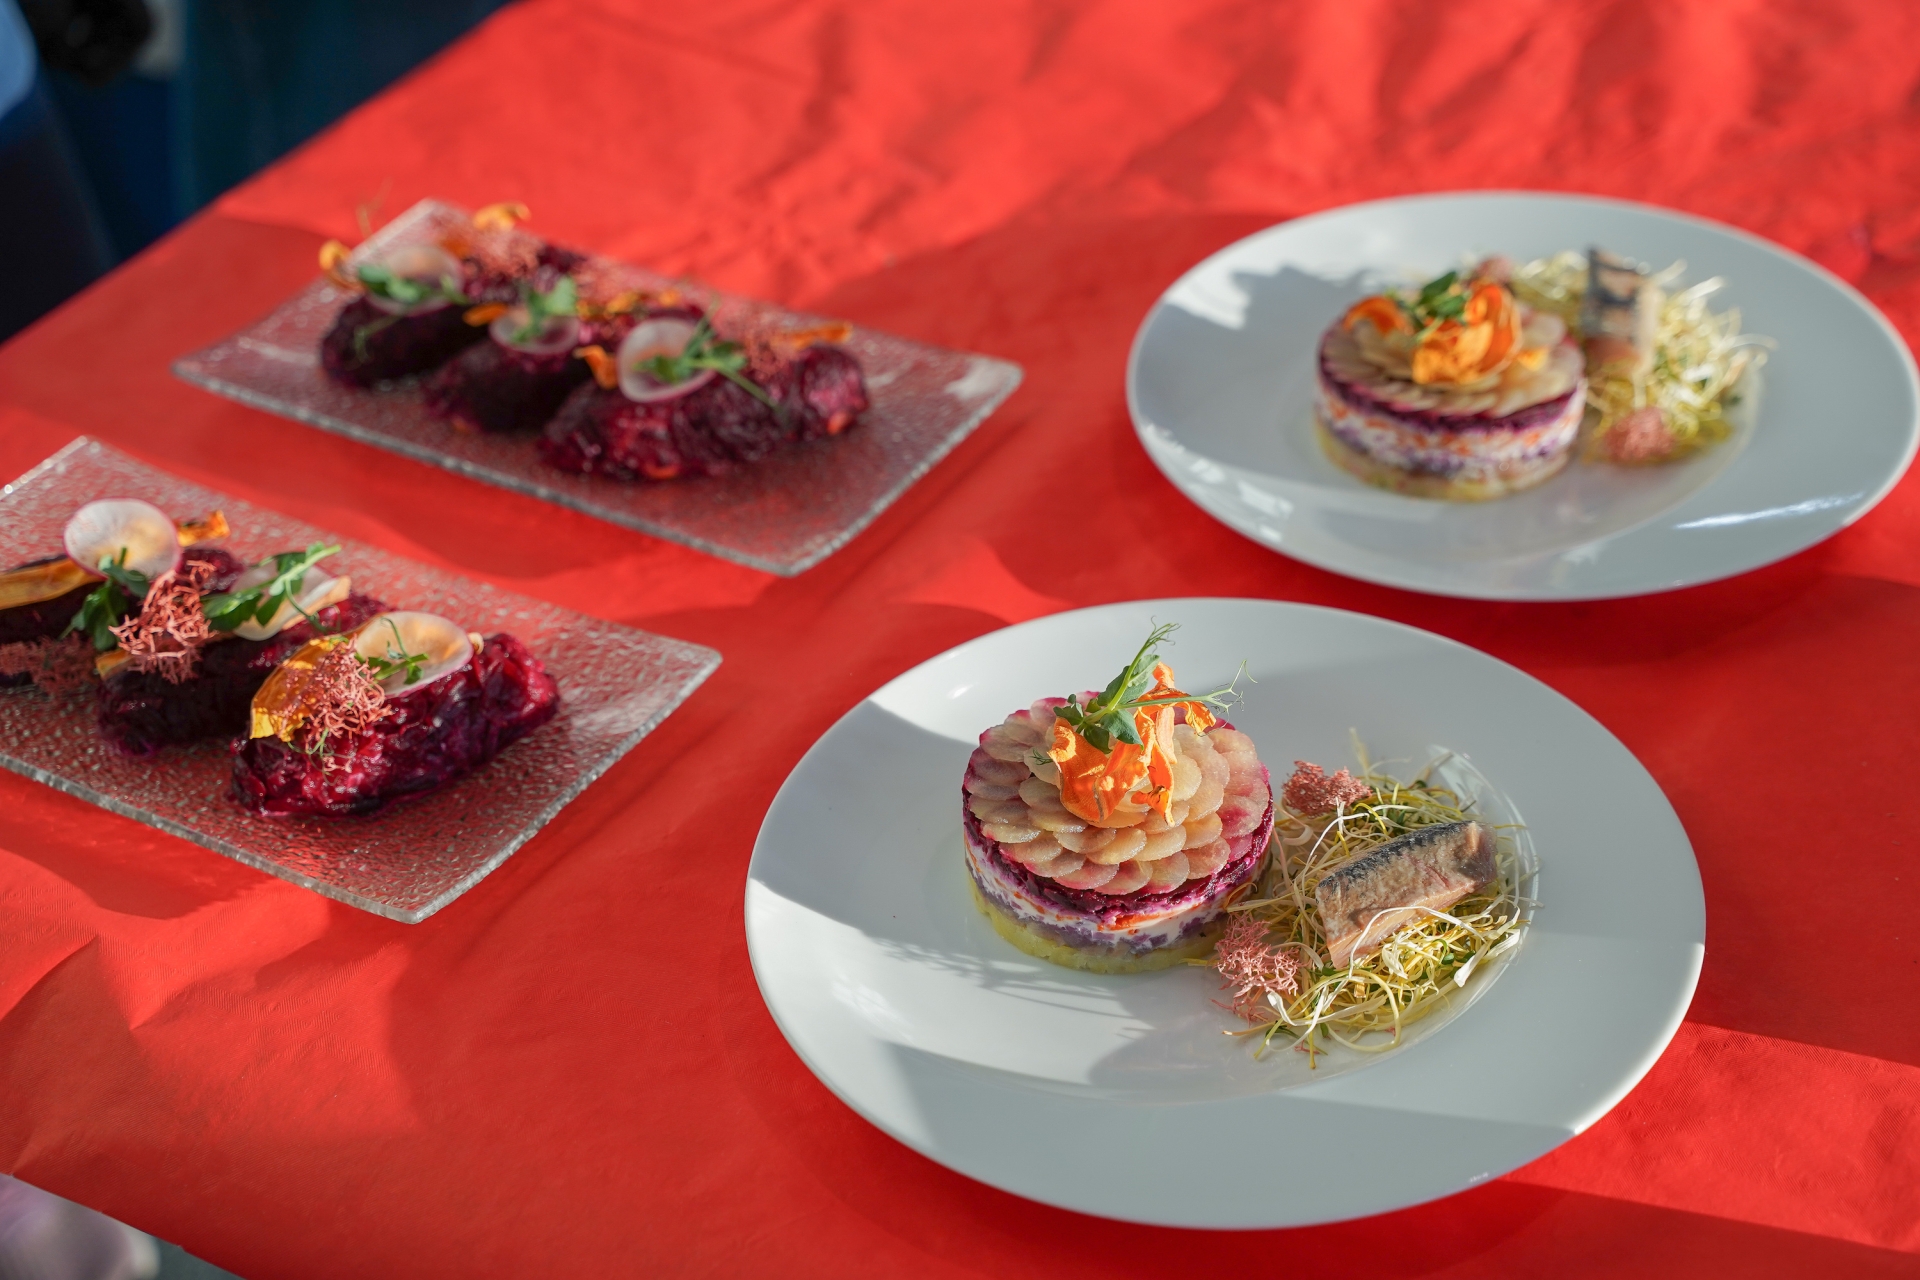 Афиша мероприятия 5 января состоялся Фестиваль национальных блюд в парк-отеле "Империал"